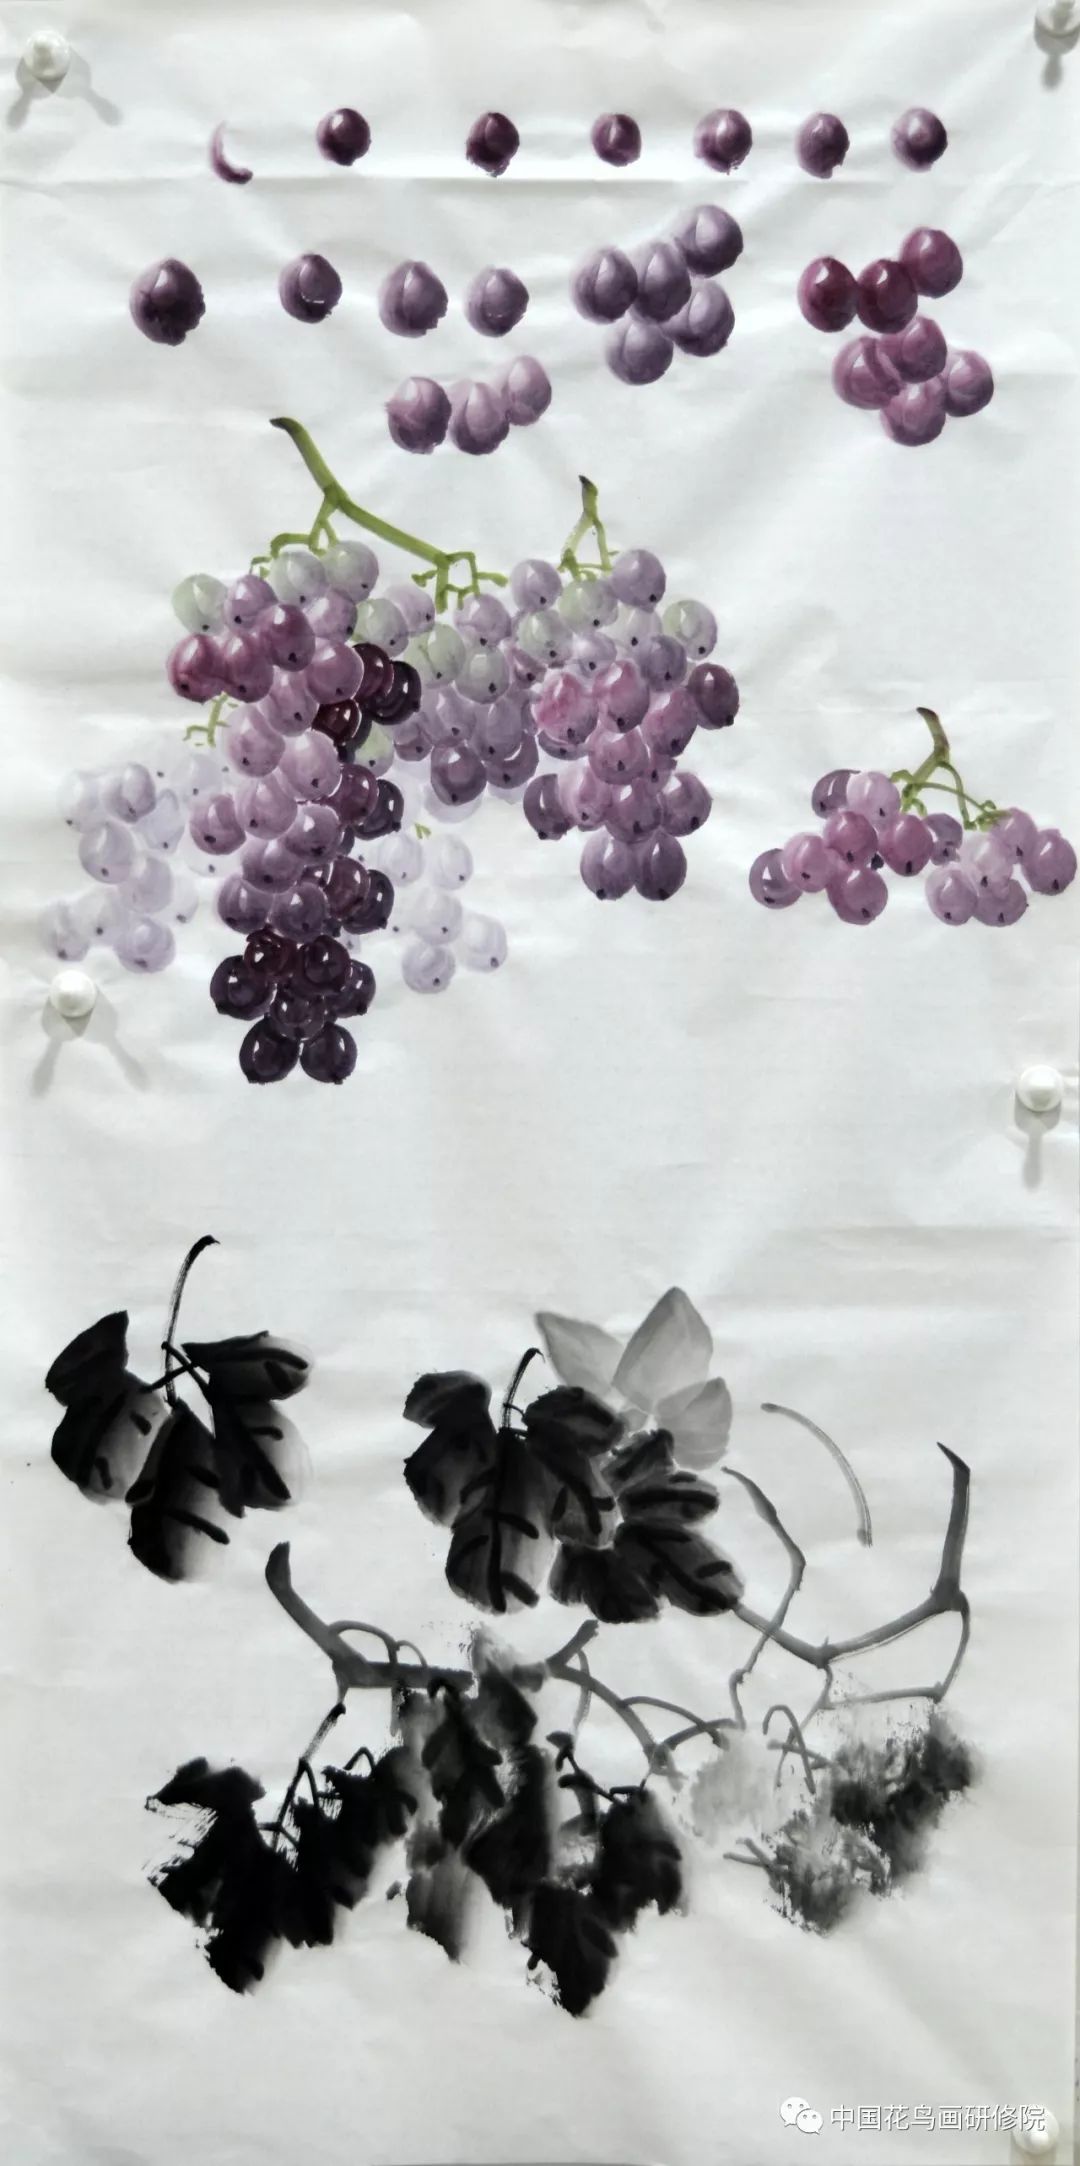 墨葡萄,彩葡萄,彩叶葡萄及一篮葡萄分别为学员们讲解了葡萄的各种画法